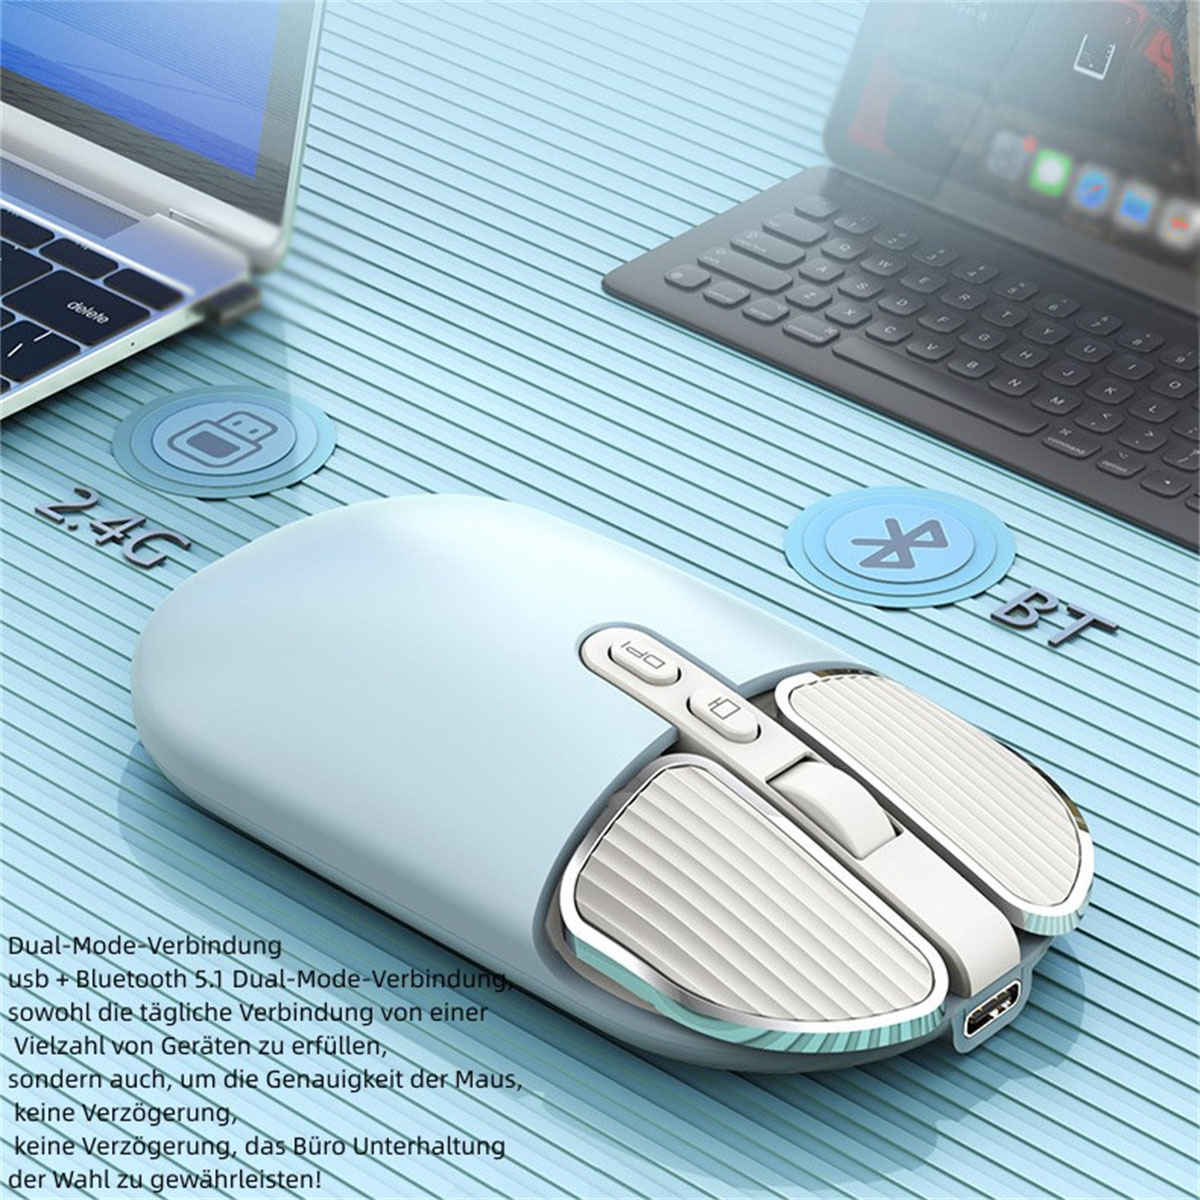 SYNTEK M203 Wireless Mouse - blau Dual-Mode-Verbindung, Positionierung präzise Maus